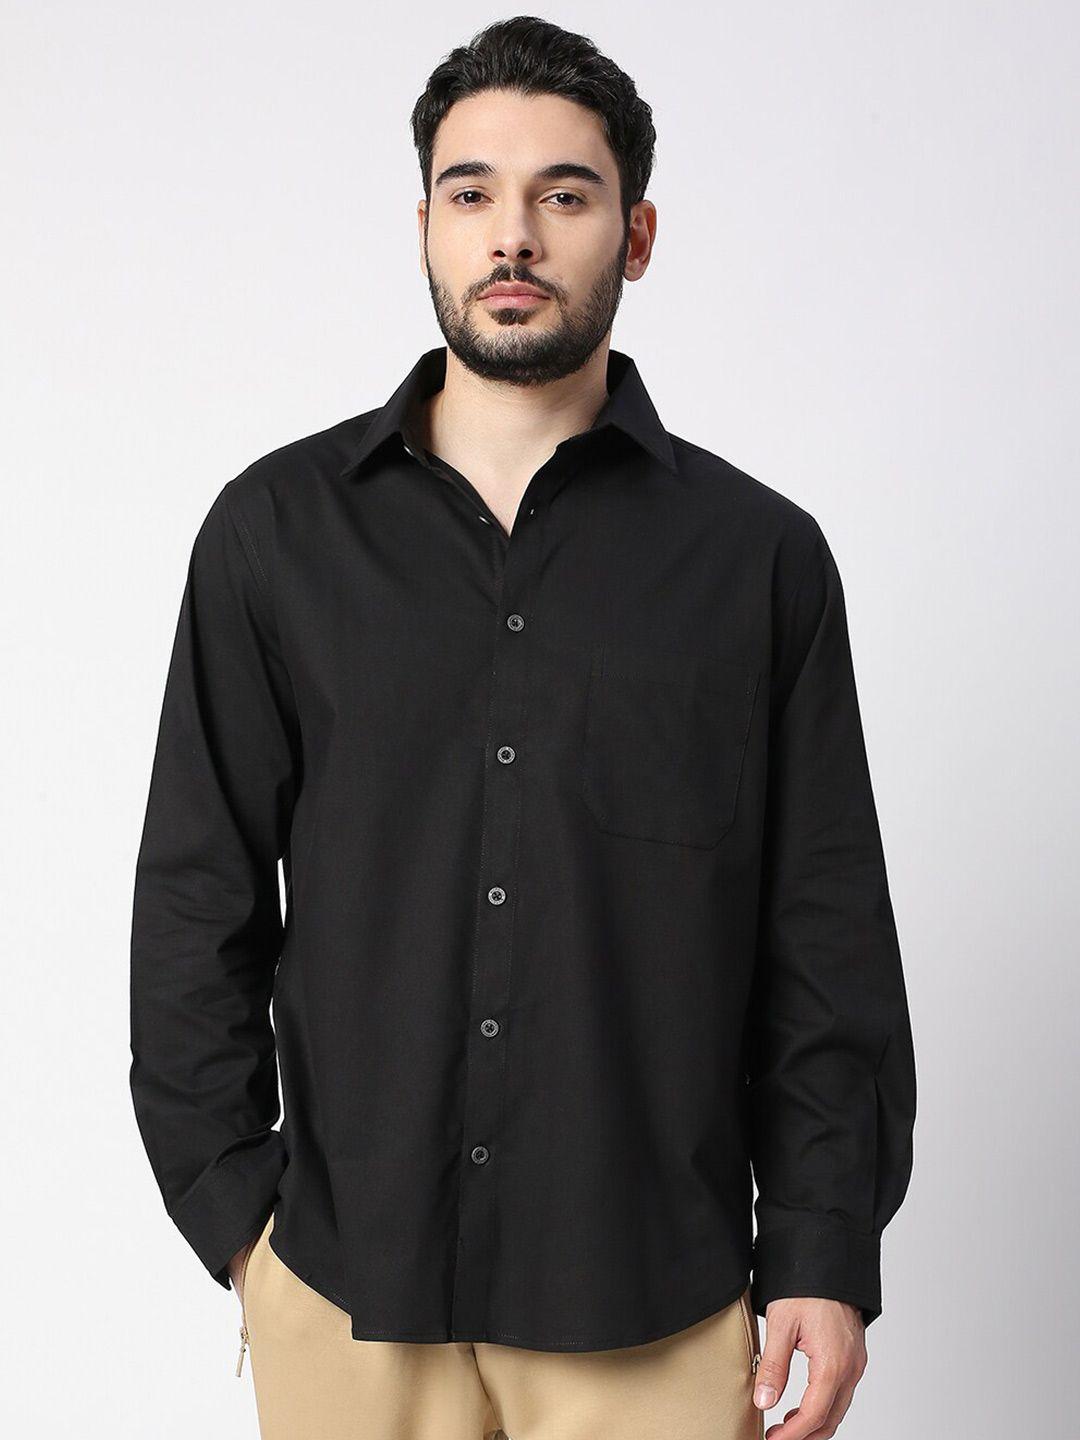 blamblack men black smart casual shirt